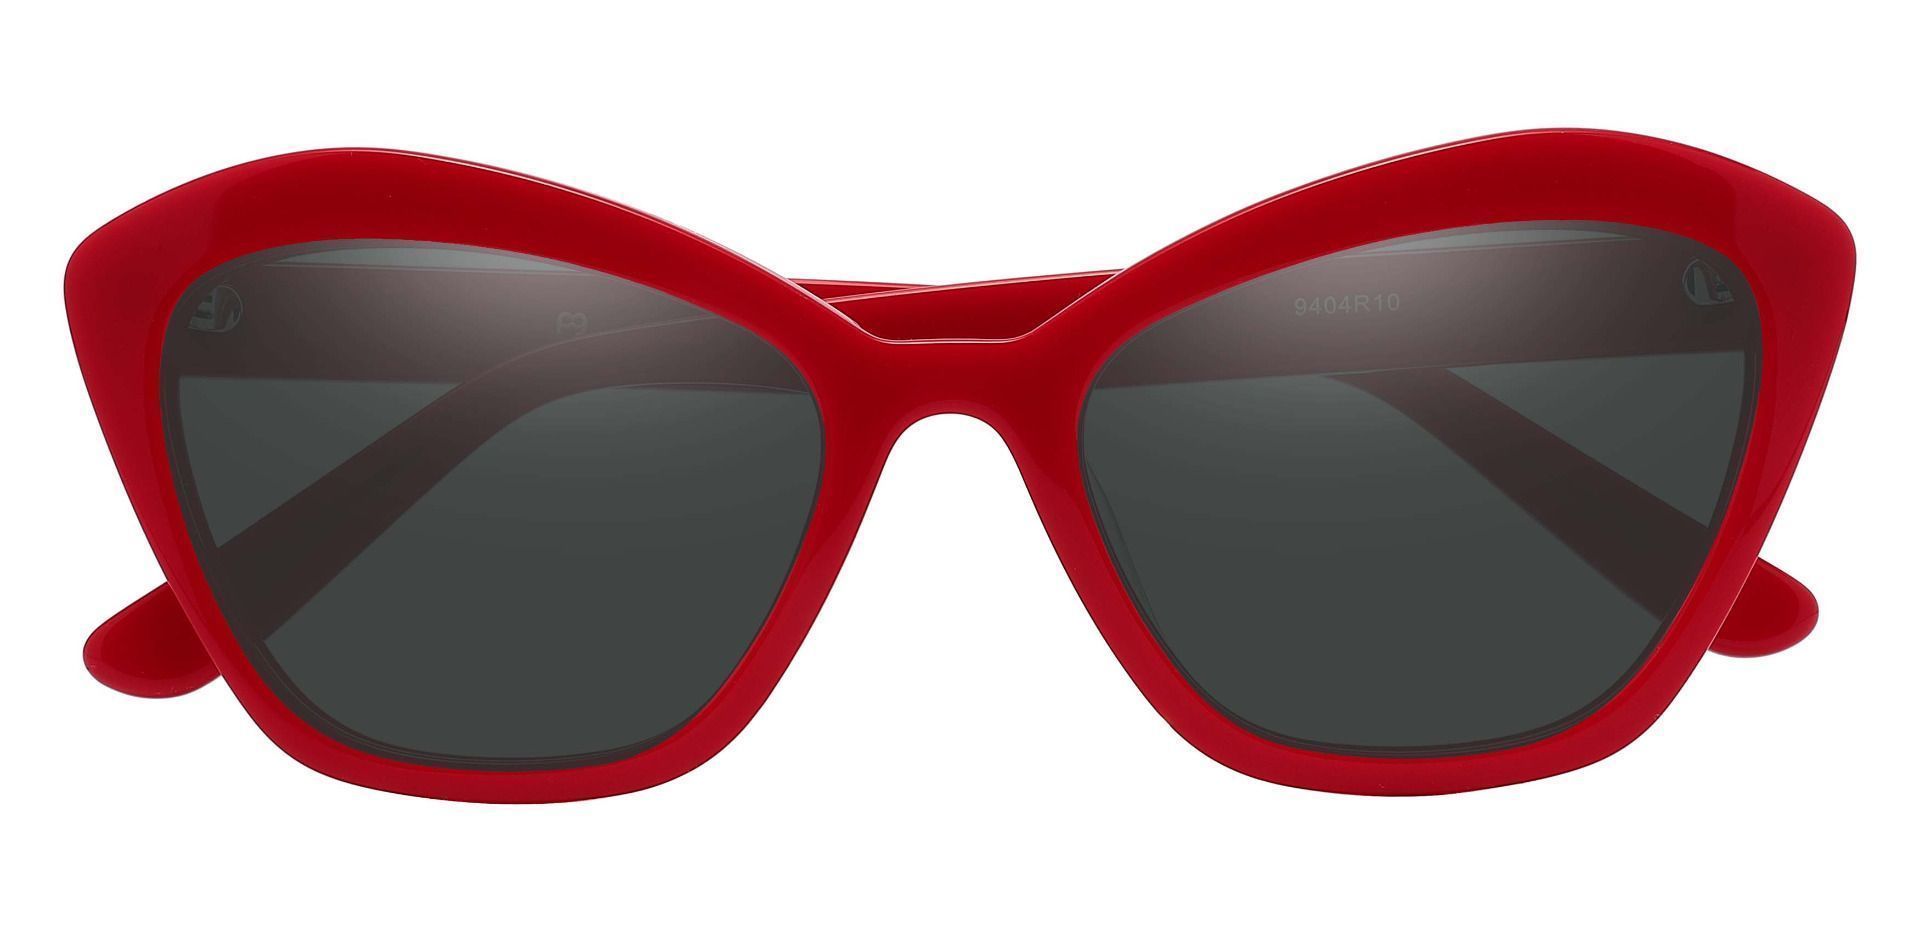 Geneva Cat Eye Reading Sunglasses - Red Frame With Gray Lenses